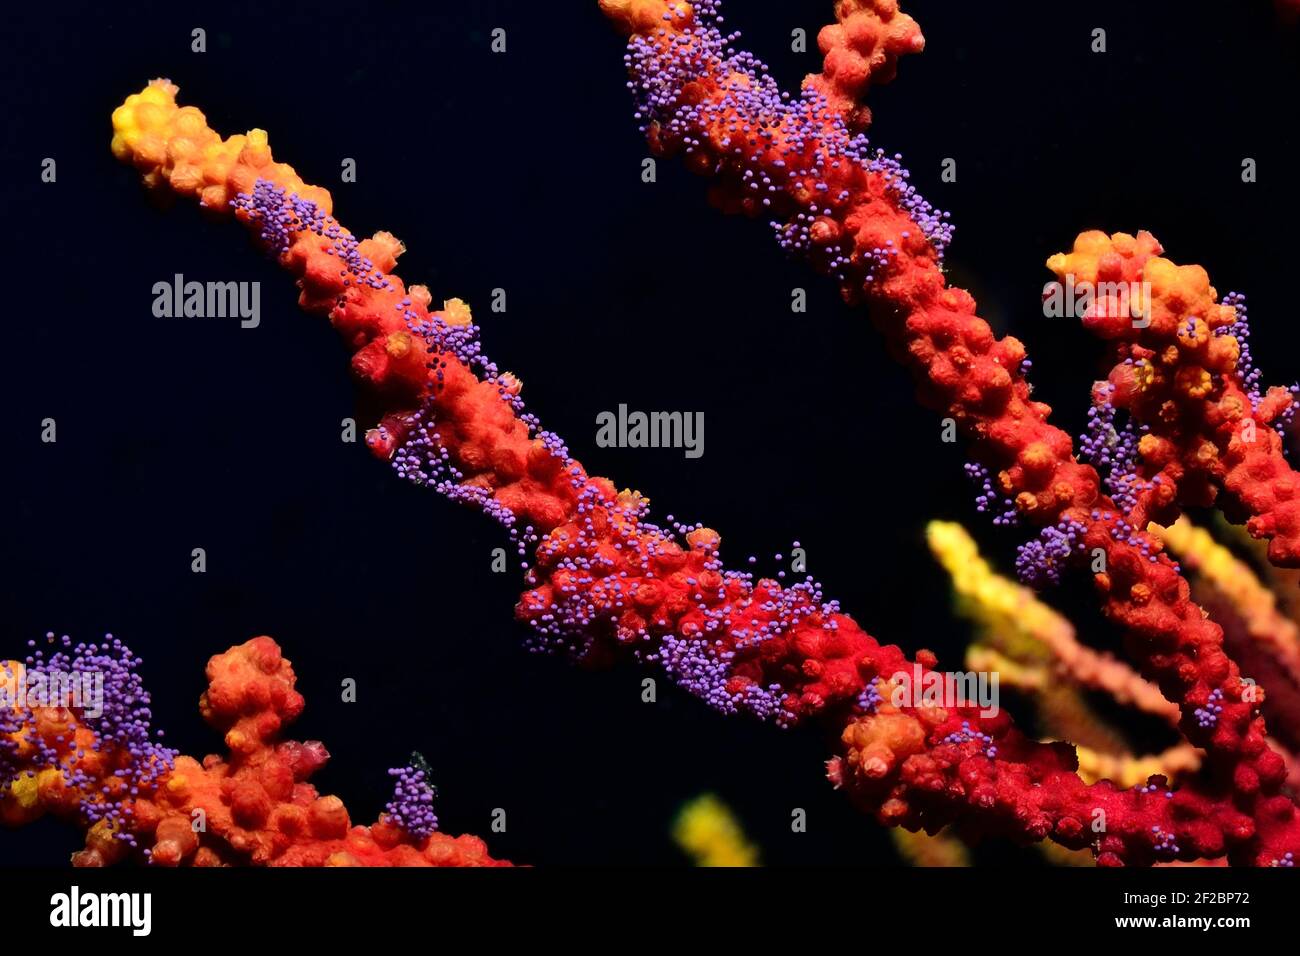 Paramuricea clavata, violescent sea-whip spawning, Farbwechselnde Gorgonie beim Ablaichen, Tamariu, Costa Brava, Spain, Mediterranean Sea Stock Photo